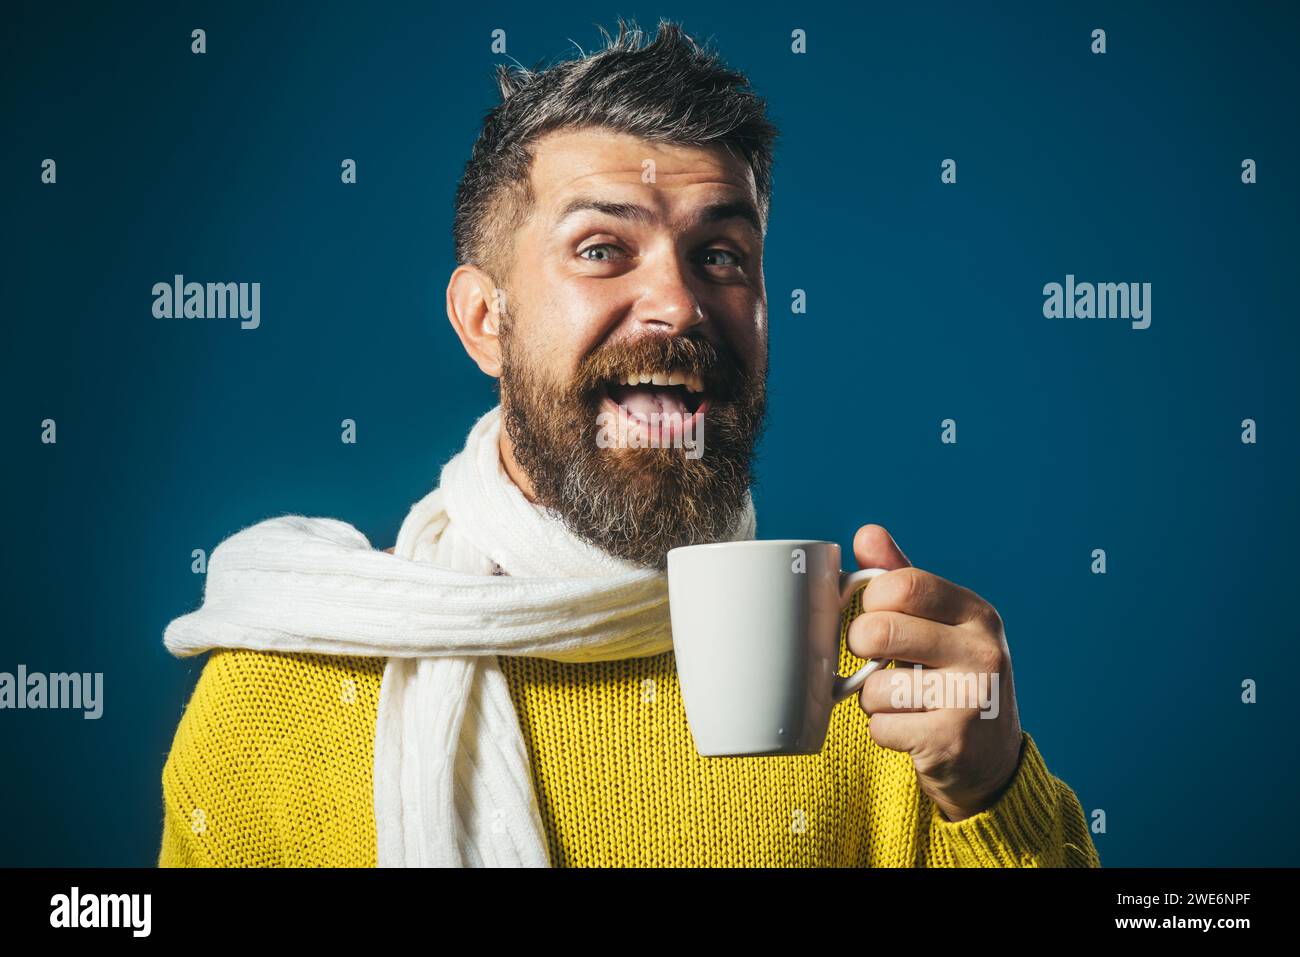 Glücklicher Mann mit Bart und stilvollem Friseur, der eine Tasse heißen Kaffee oder Tee trinkt. Bärtiger Mann in gelbem Pullover, eingewickelt in weißen Schal, der Kaffeepause macht Stockfoto